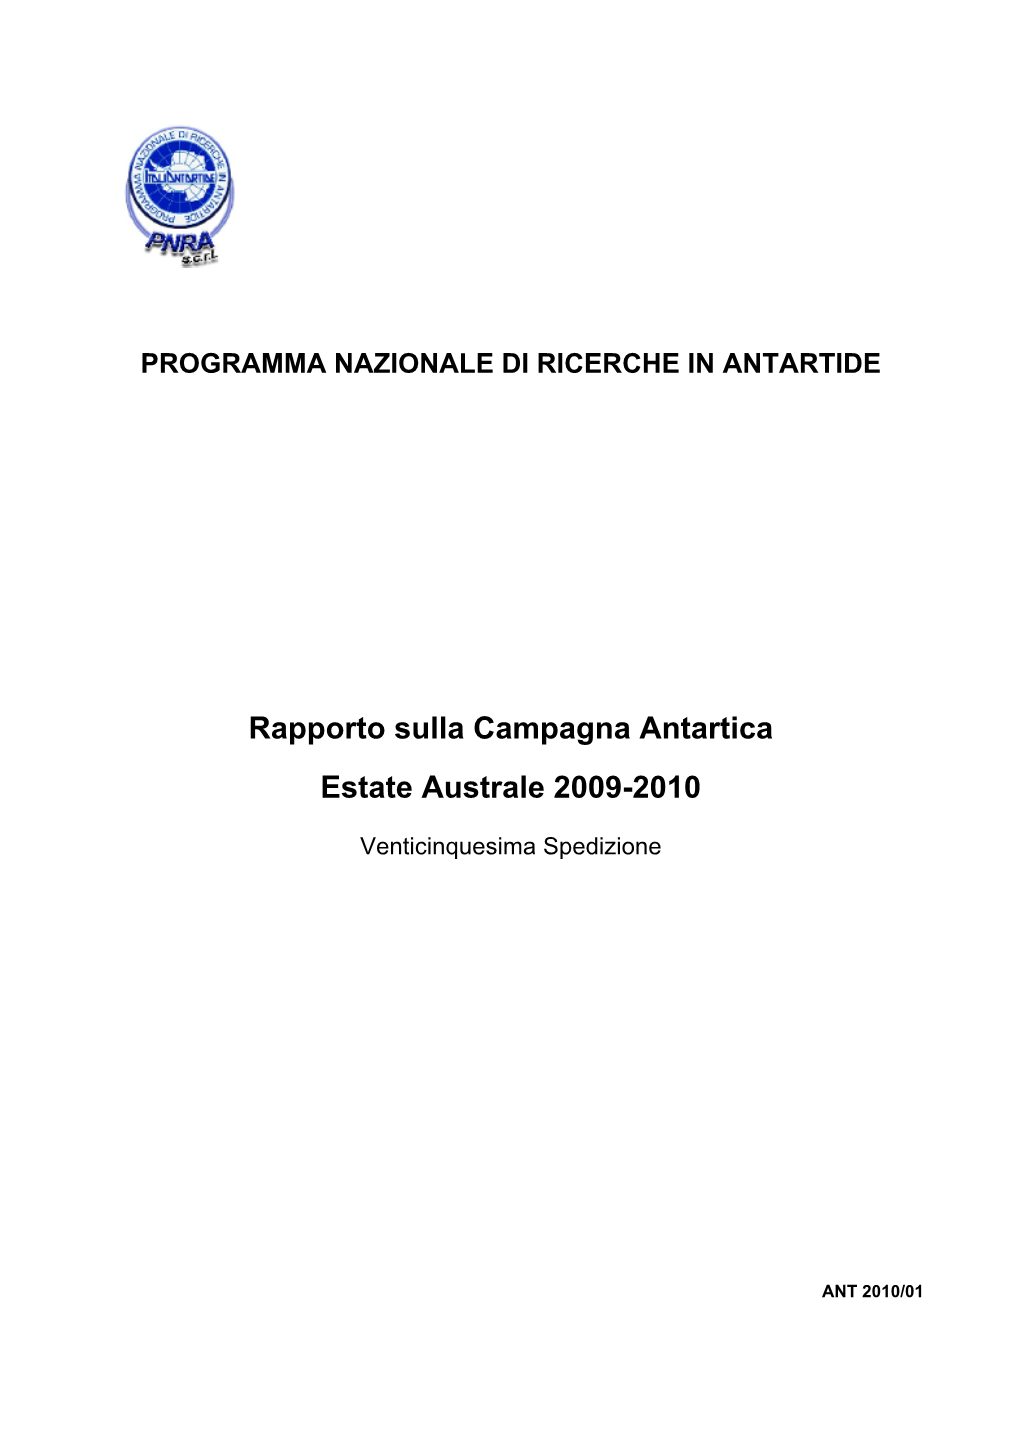 Rapporto Sulla Campagna Antartica Estate Australe 2009-2010